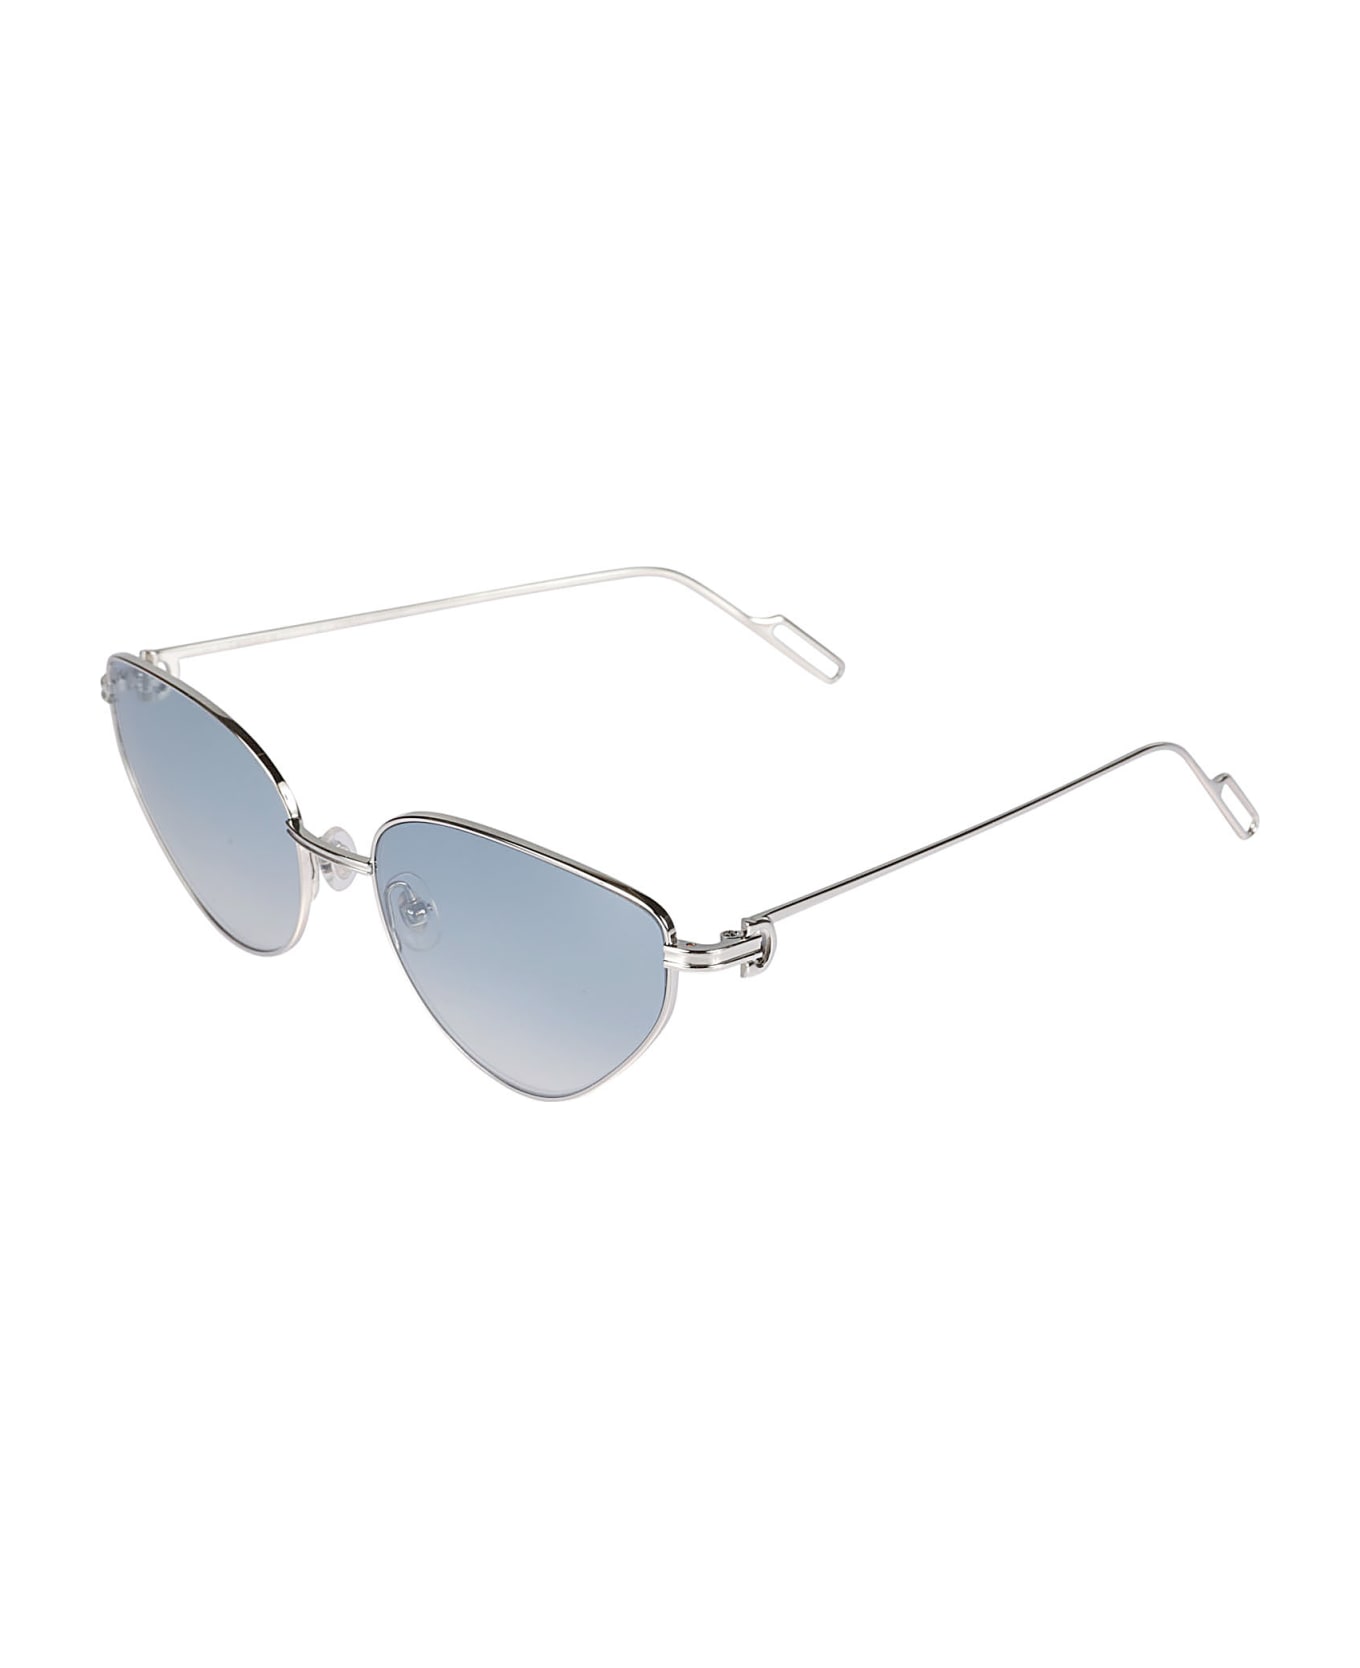 Cartier Eyewear Cat-eye Sunglasses - 006 silver silver blue